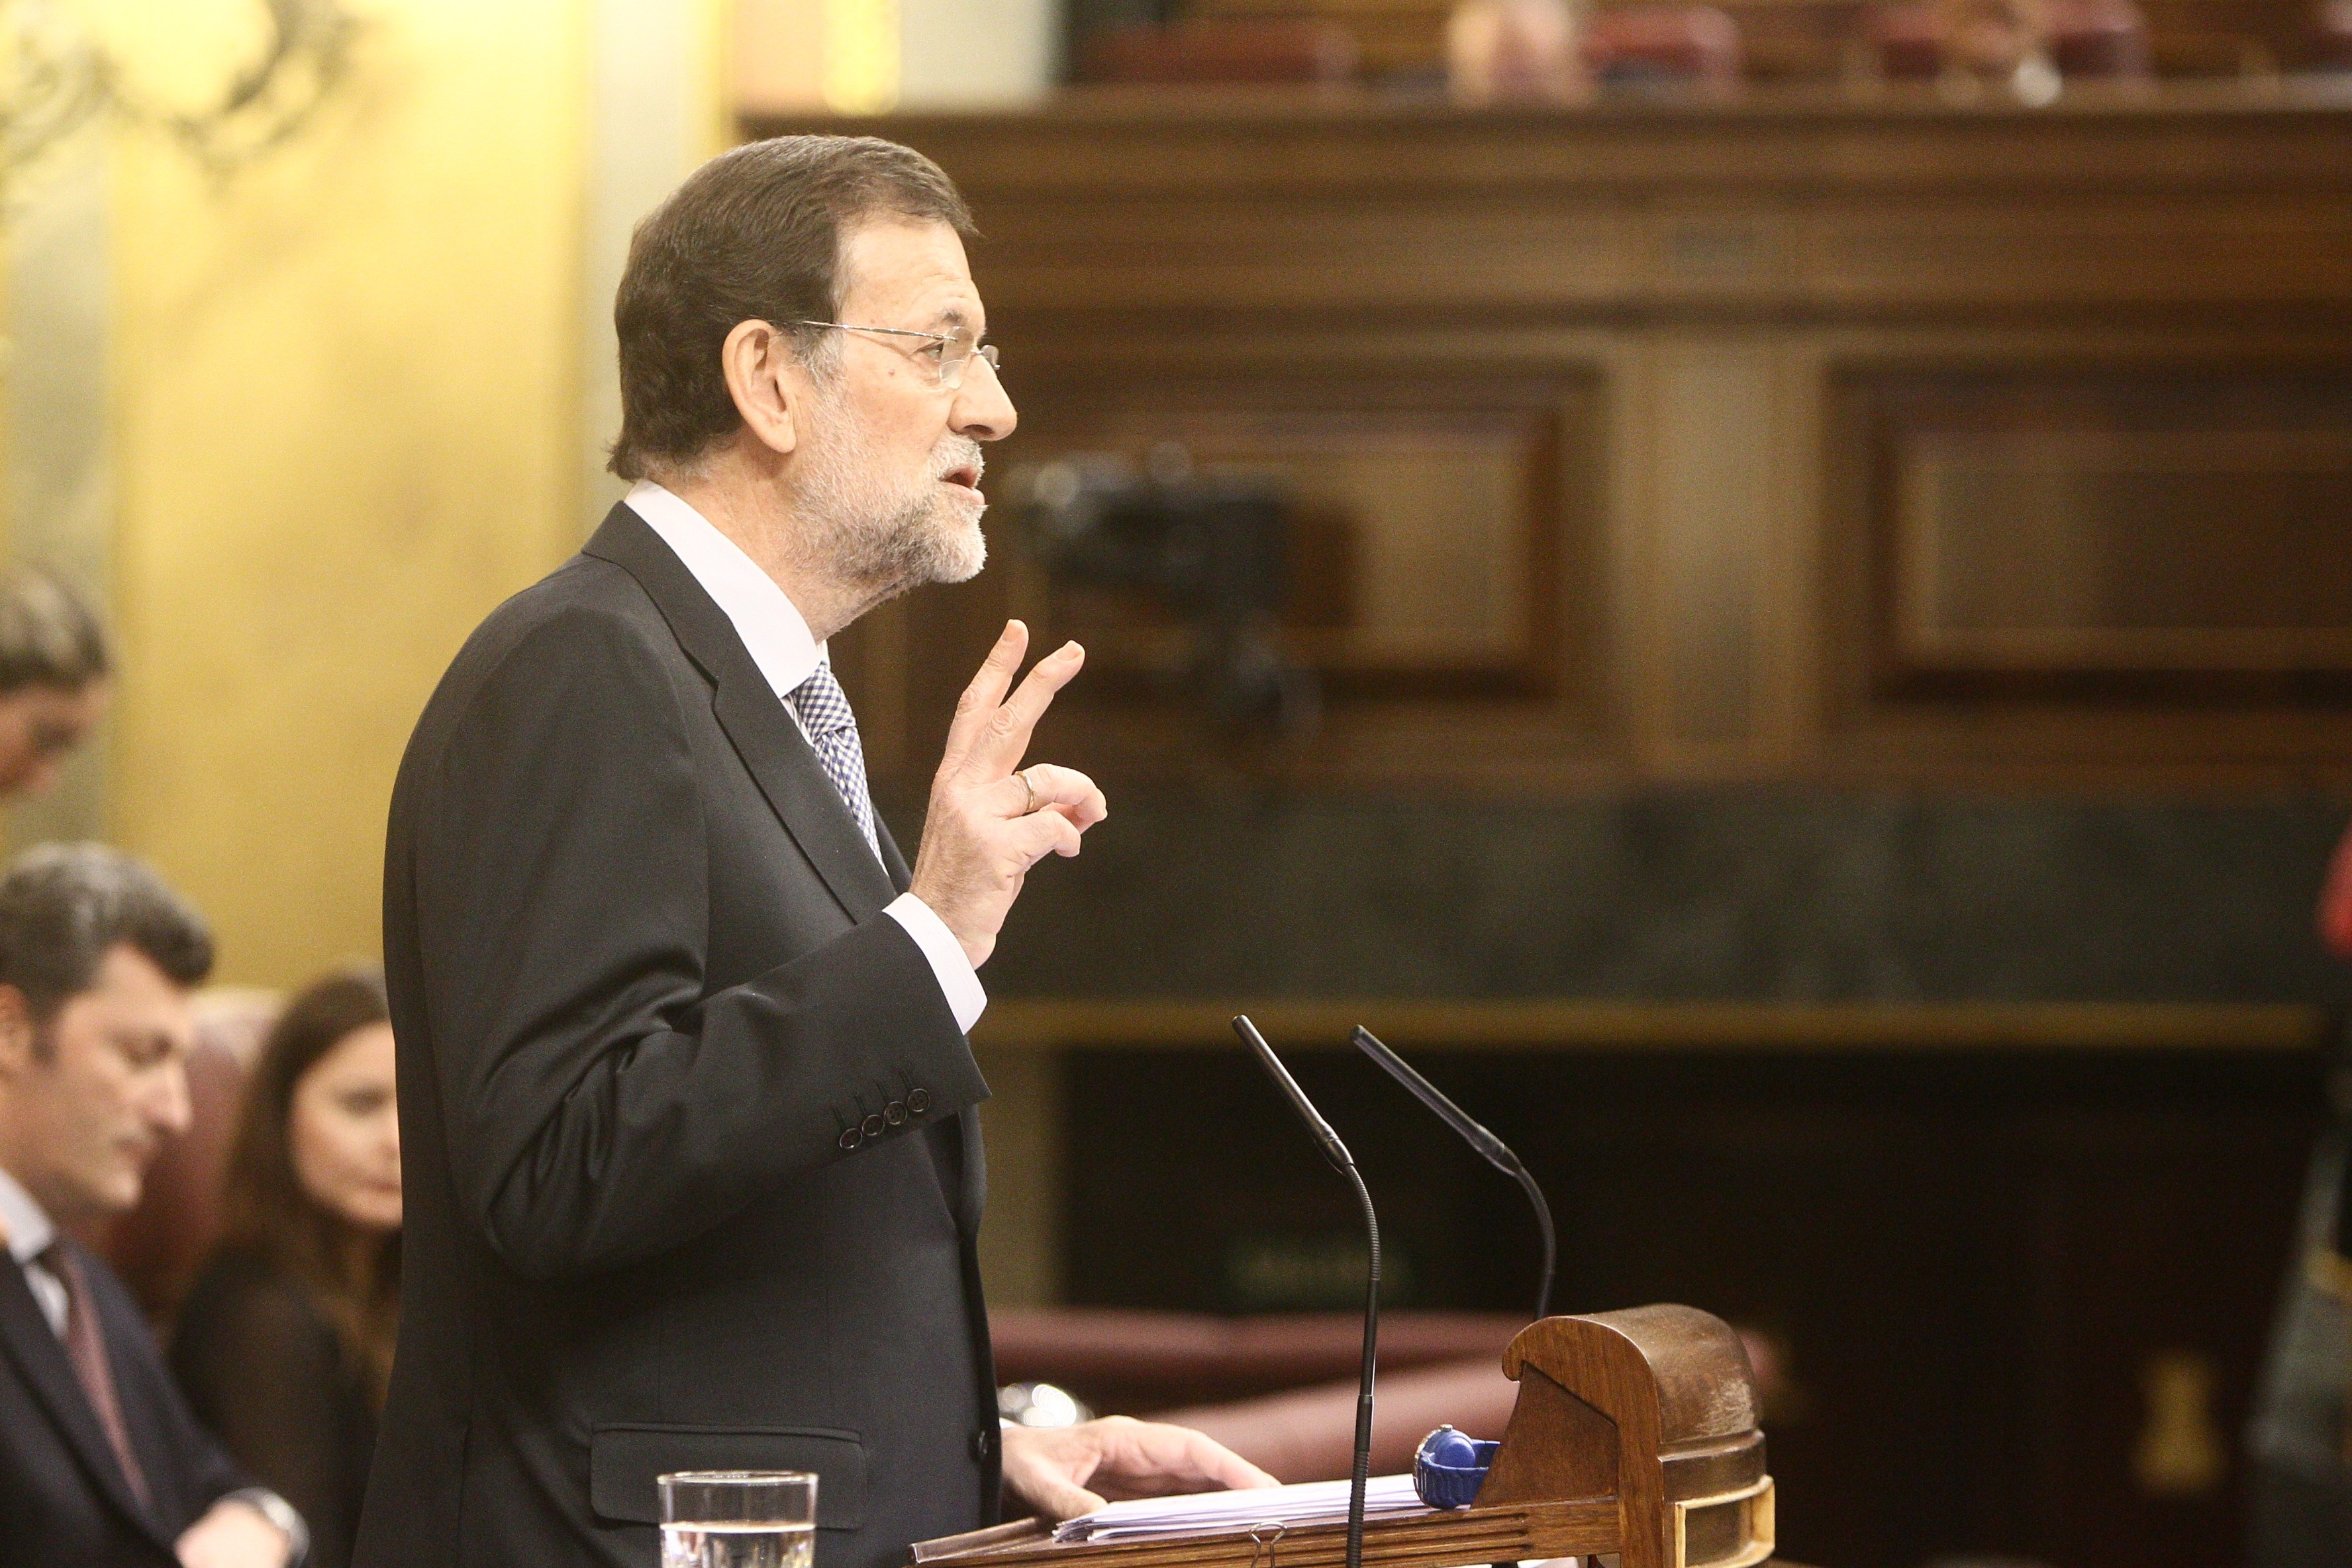 Debat(11)-Rajoy dibuja un escenario «desolador», pide «con humildad» la ayuda de todos y promete decir siempre la verdad